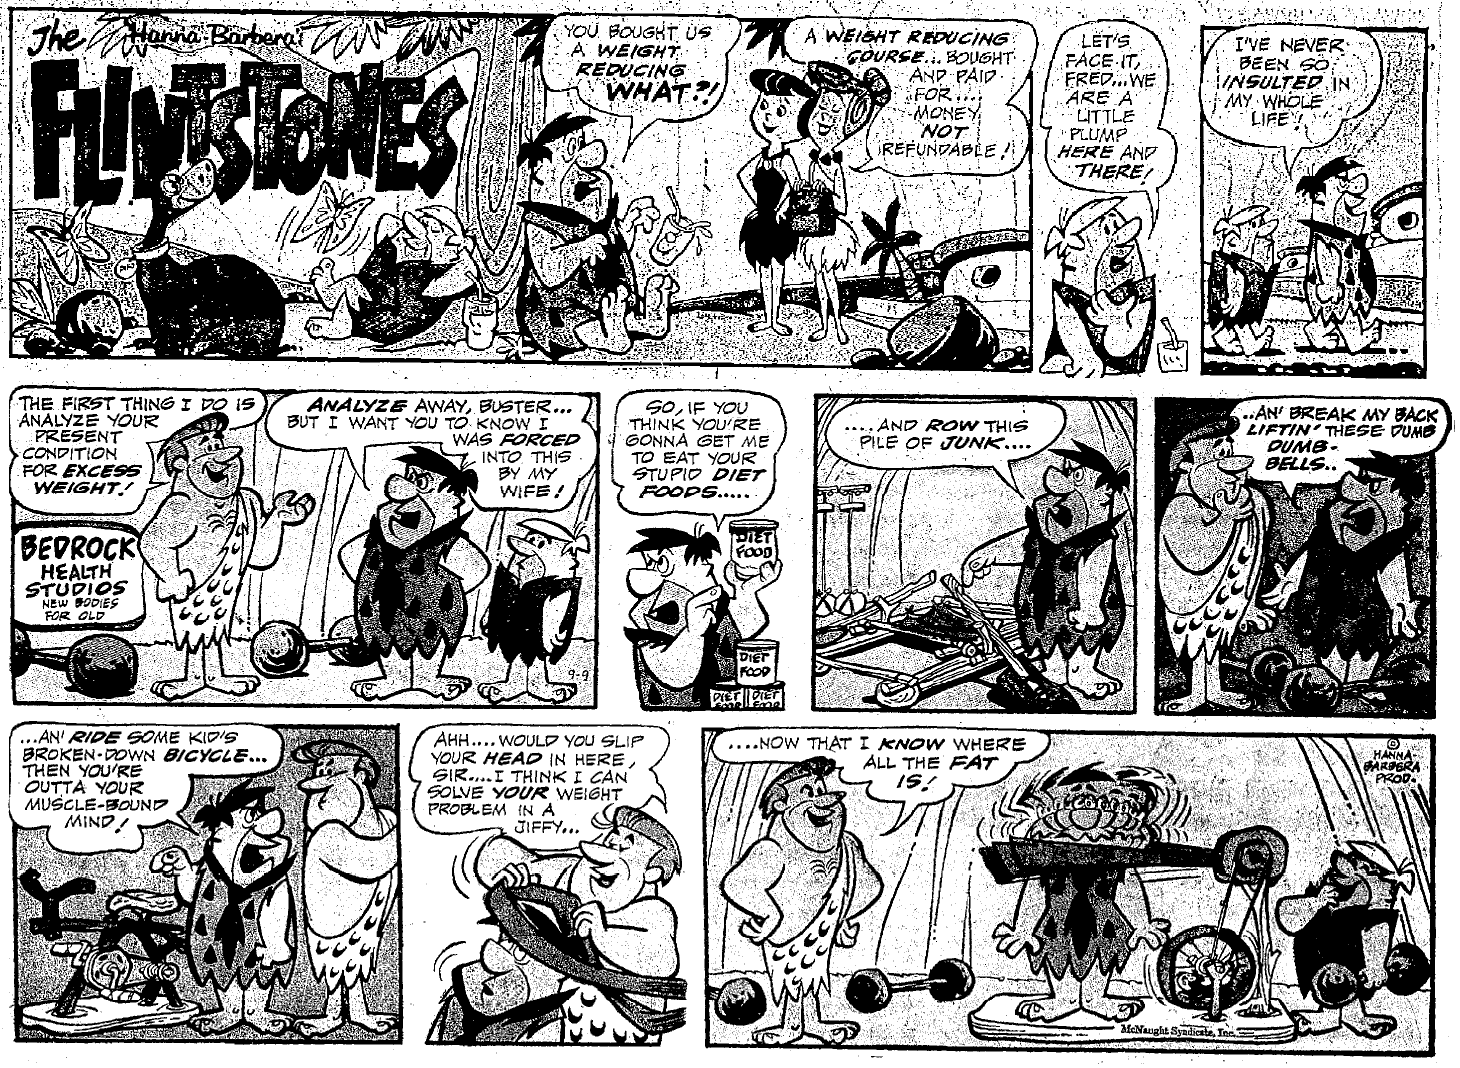 Yowp: Flintstones Weekend Comics, September 1962